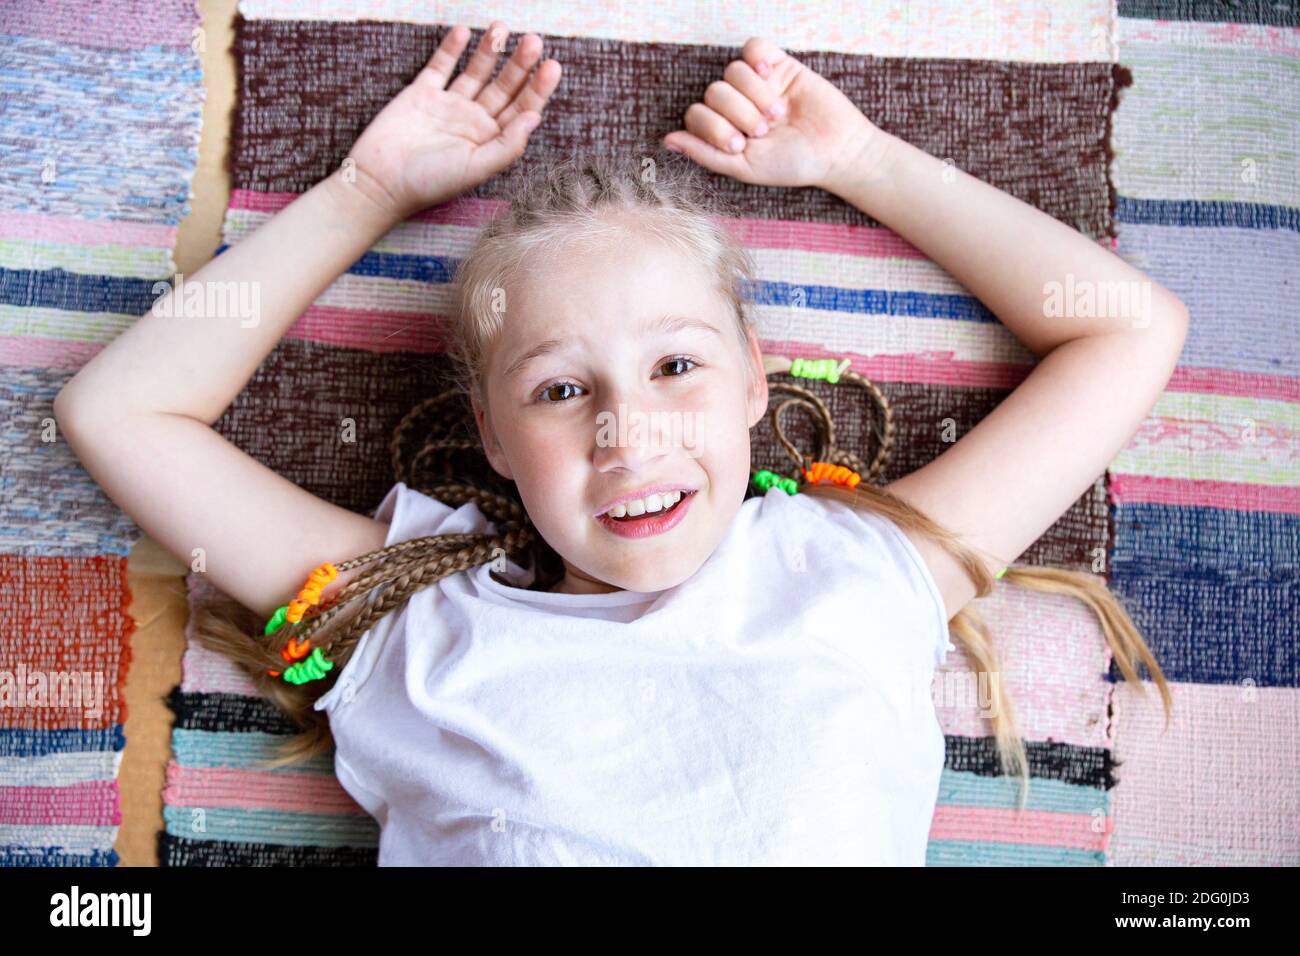 Porträt eines schönen lächelnden Mädchen mit Zöpfen Blick auf Kamera und lächelnd, auf einem gewebten Teppich mit den Armen nach oben liegend. Stockfoto